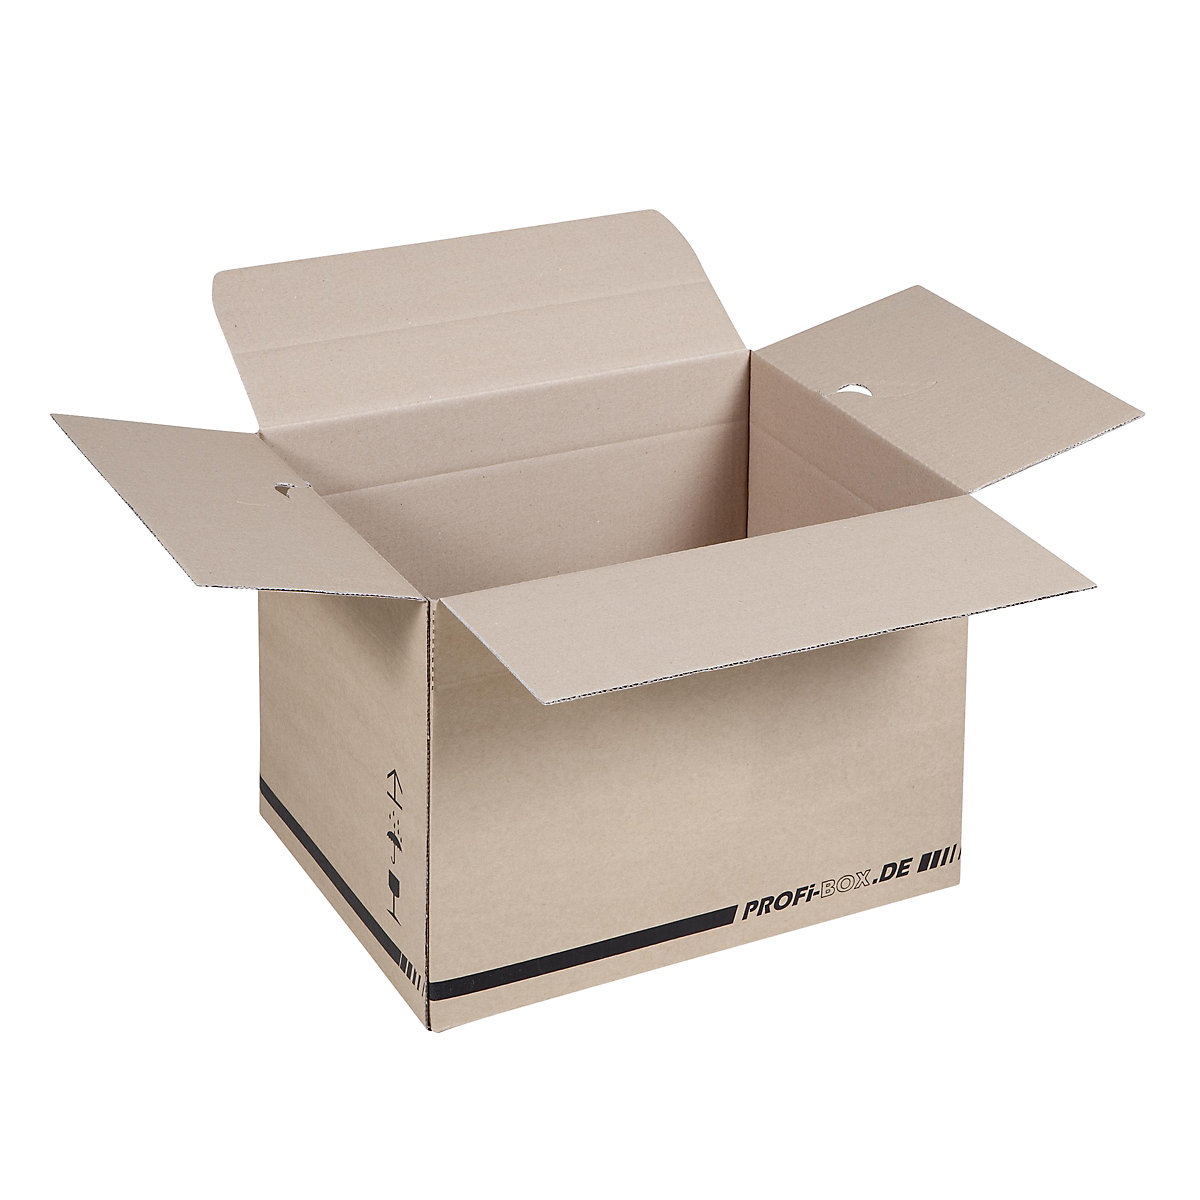 Profi-Boxen, aus 1-welliger Pappe, FEFCO 0701, Innenmaße 384 x 284 x 284 mm, VE 50 Stk-3